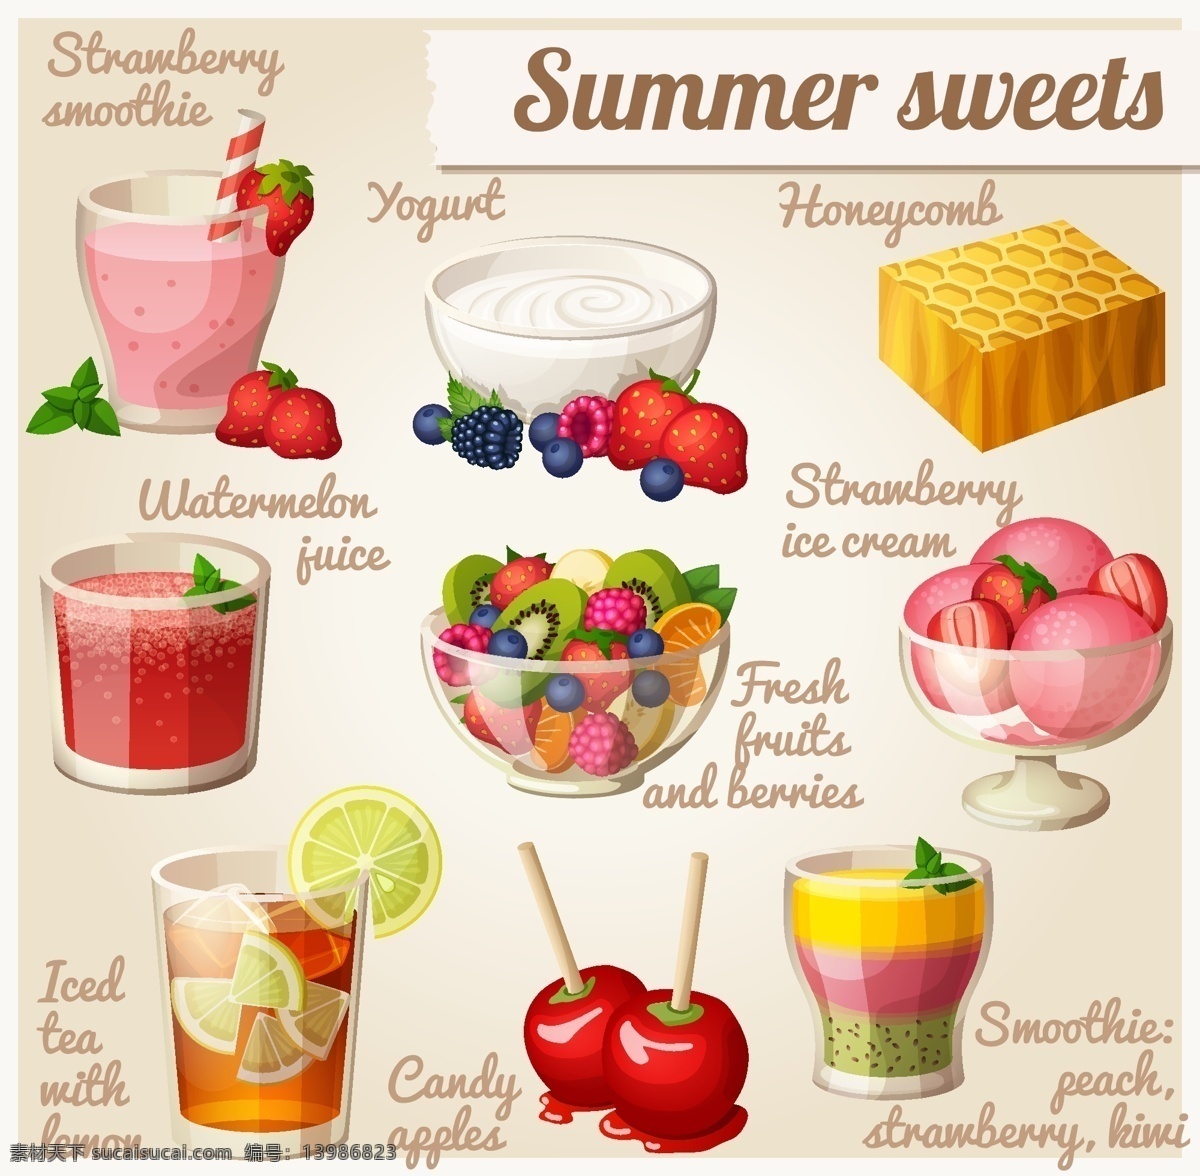 美味 夏日 甜点 蜂窝 矢量图 水果拼盘 酸奶 草莓冰沙 西瓜汁 草莓冰淇淋 柠檬冰茶 冰糖苹果 三色冰沙水果 其他矢量图